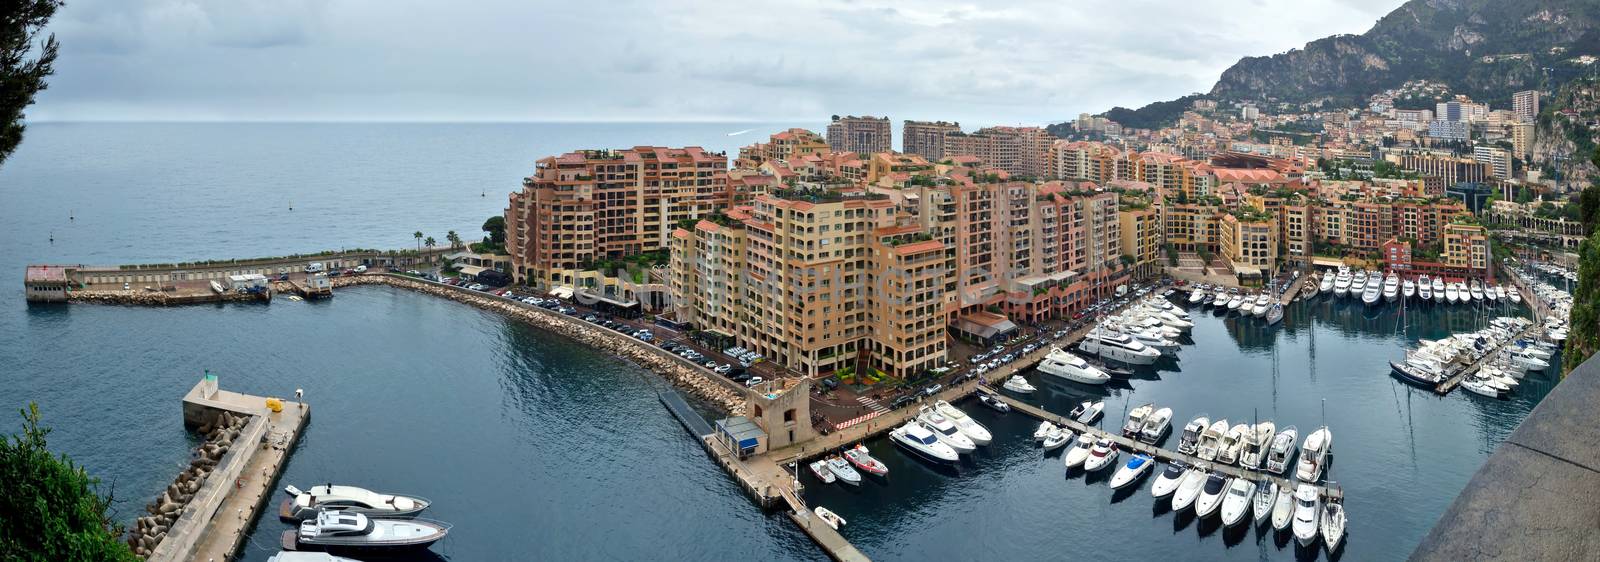 Monaco - Architecture Fontvieille district by Venakr